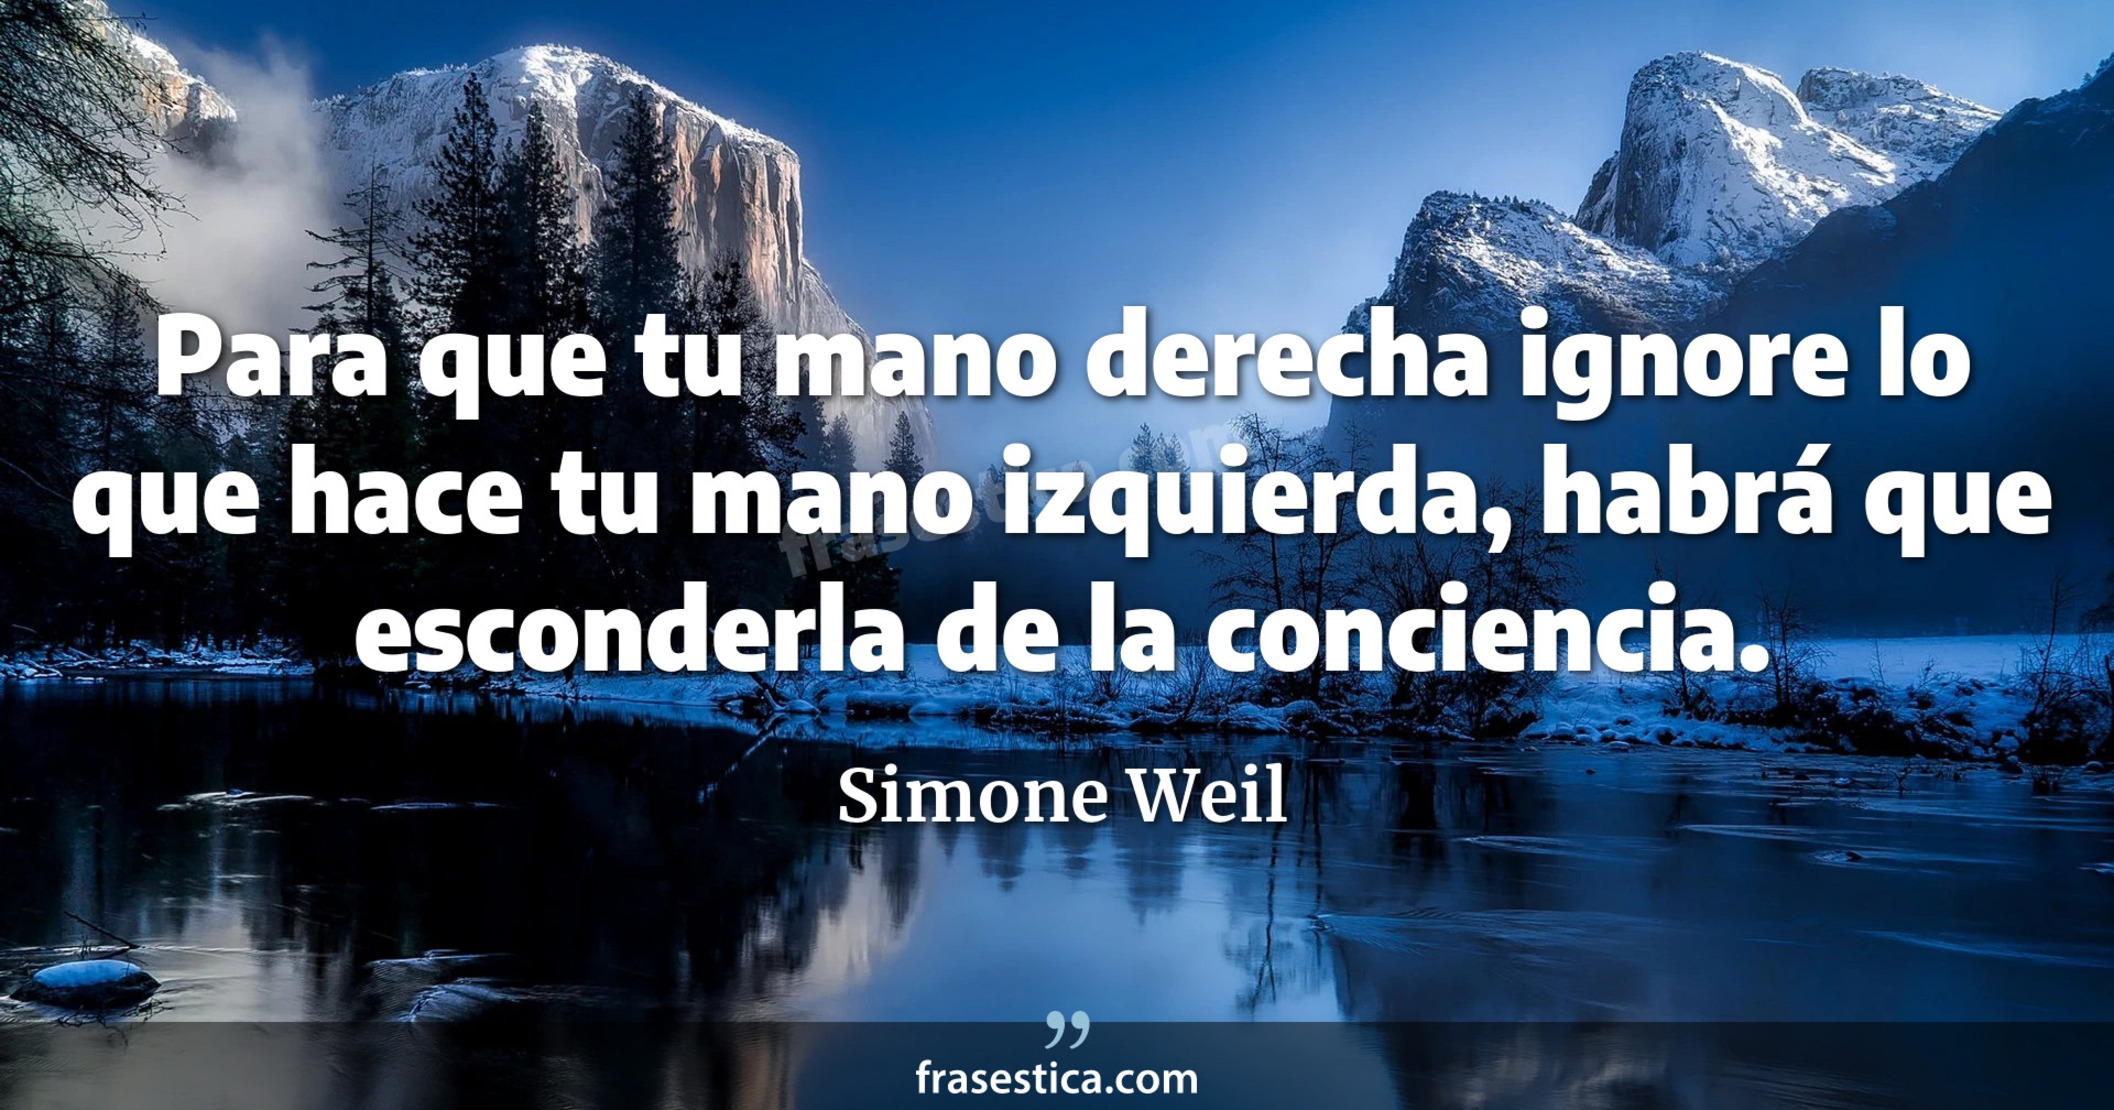 Para que tu mano derecha ignore lo que hace tu mano izquierda, habrá que esconderla de la conciencia. - Simone Weil